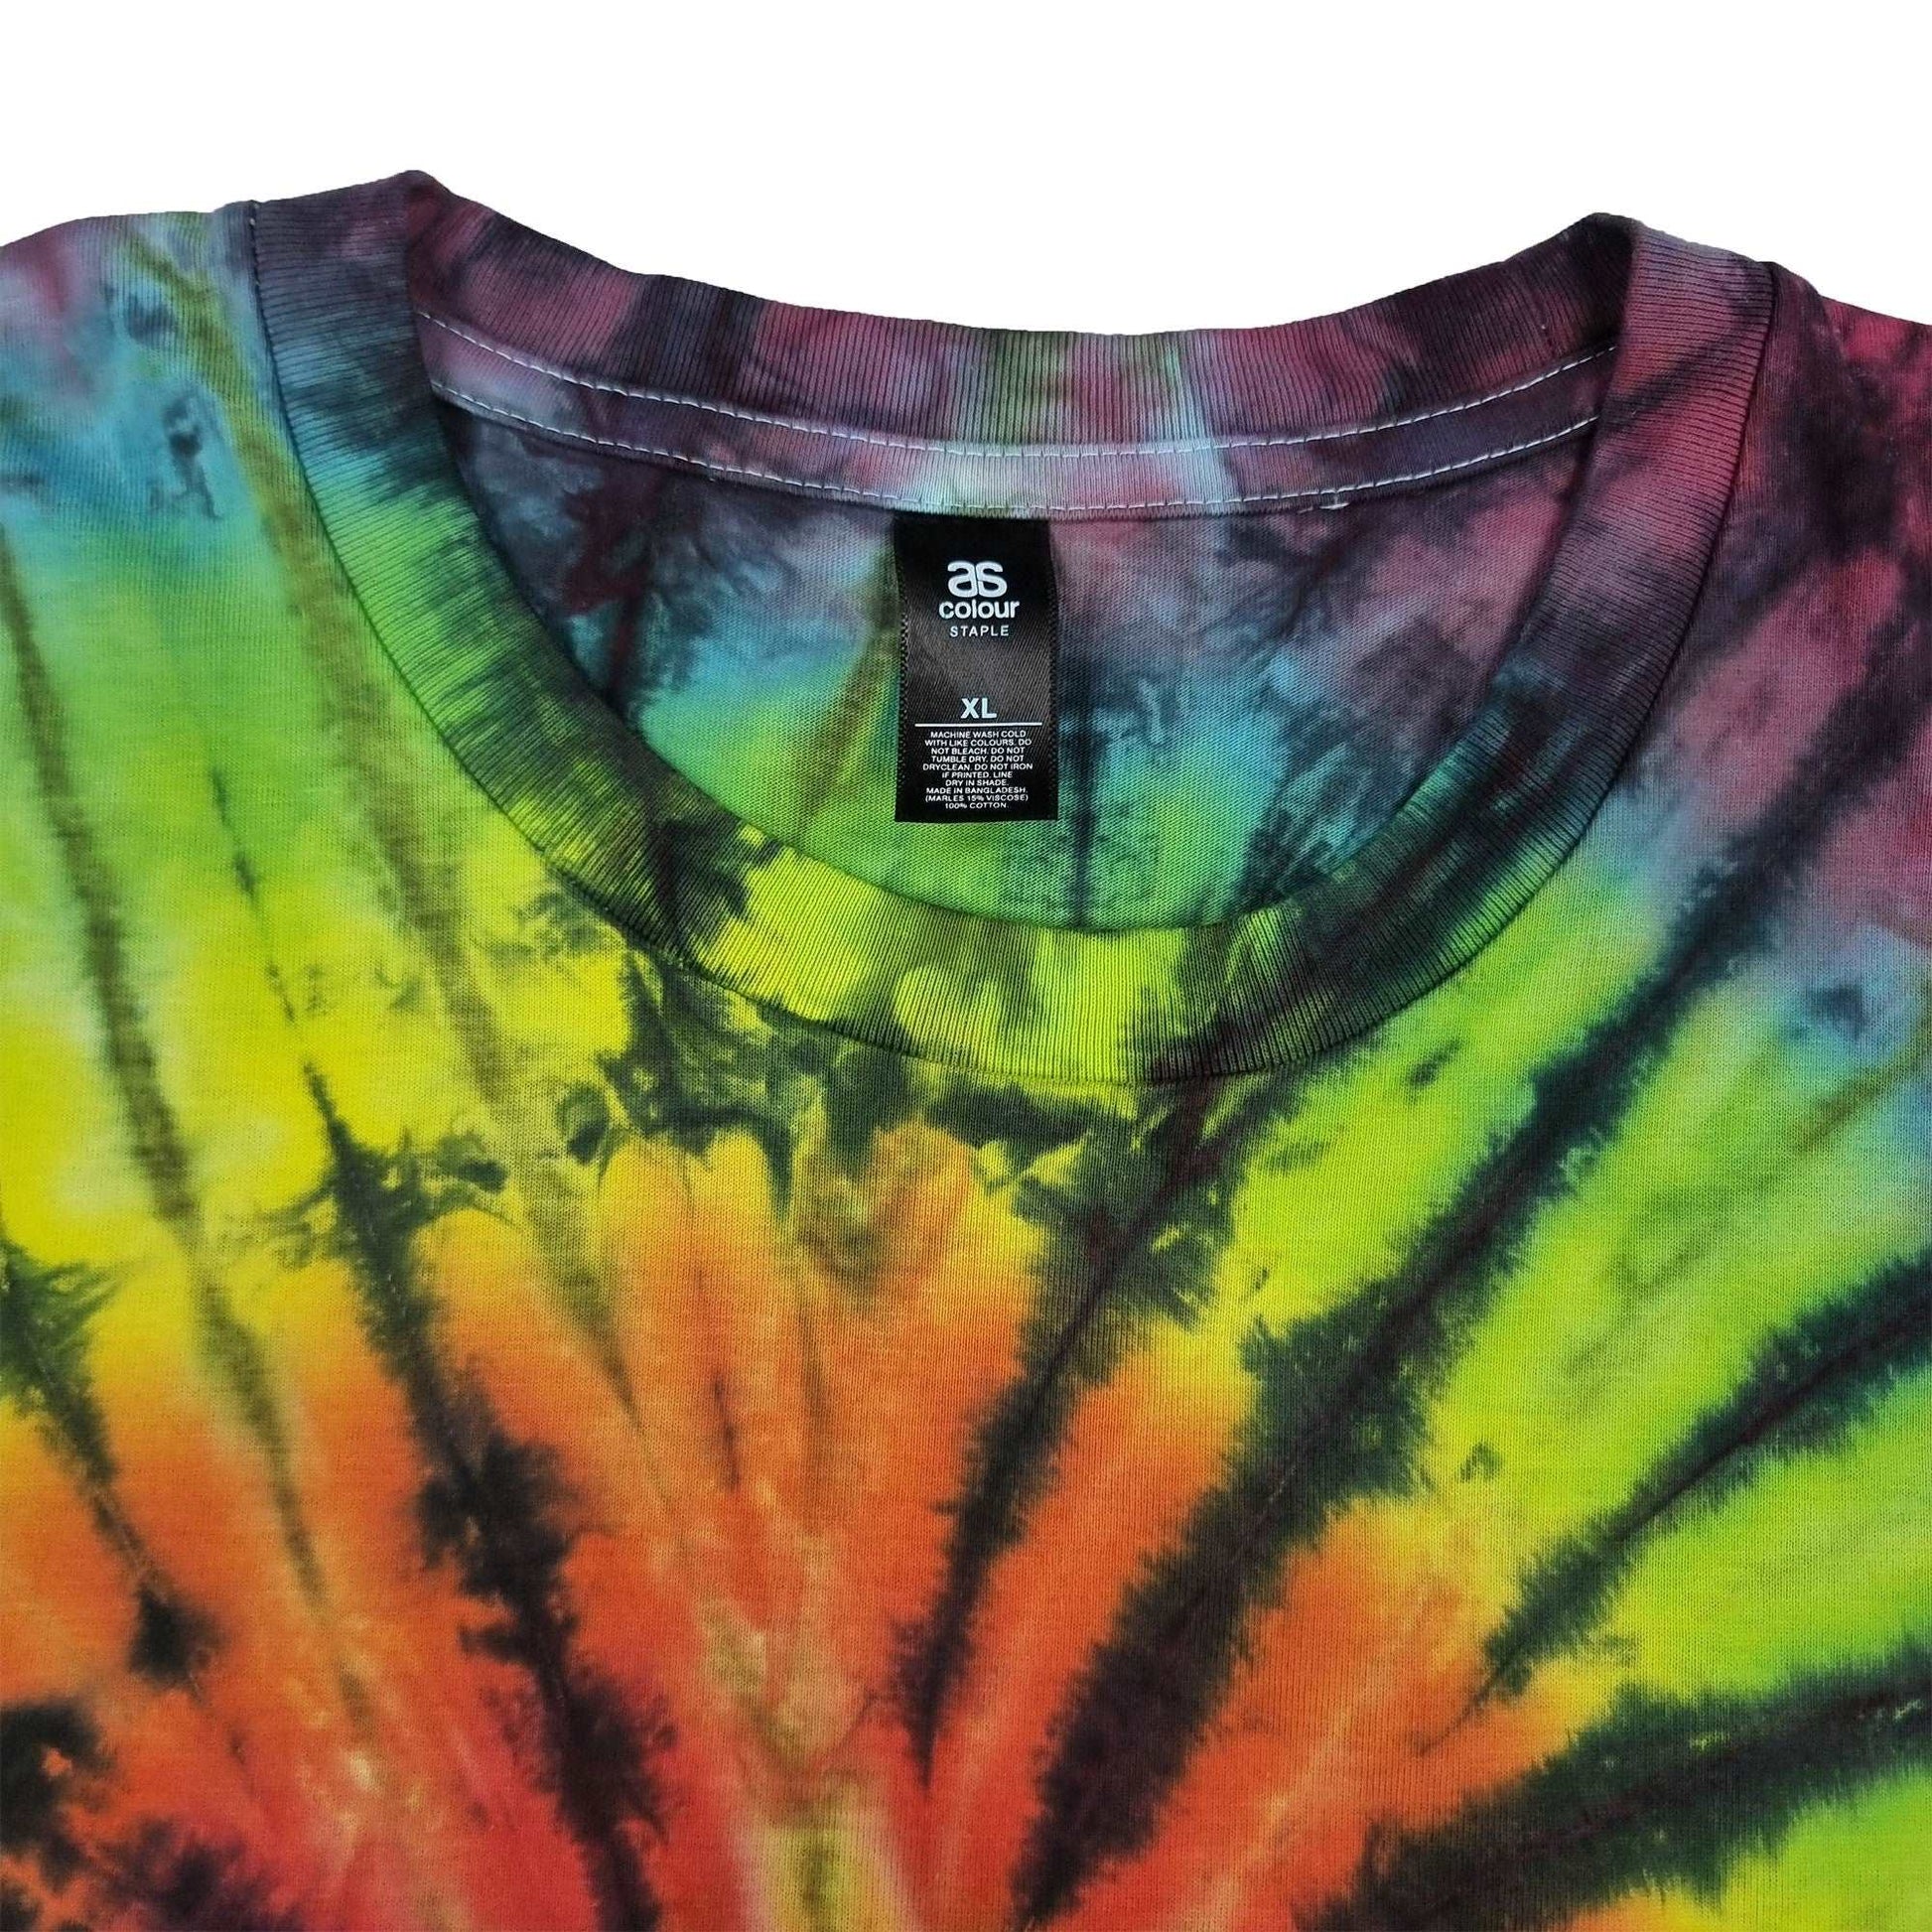 Rainbow Spiral Tie Dye T-Shirt